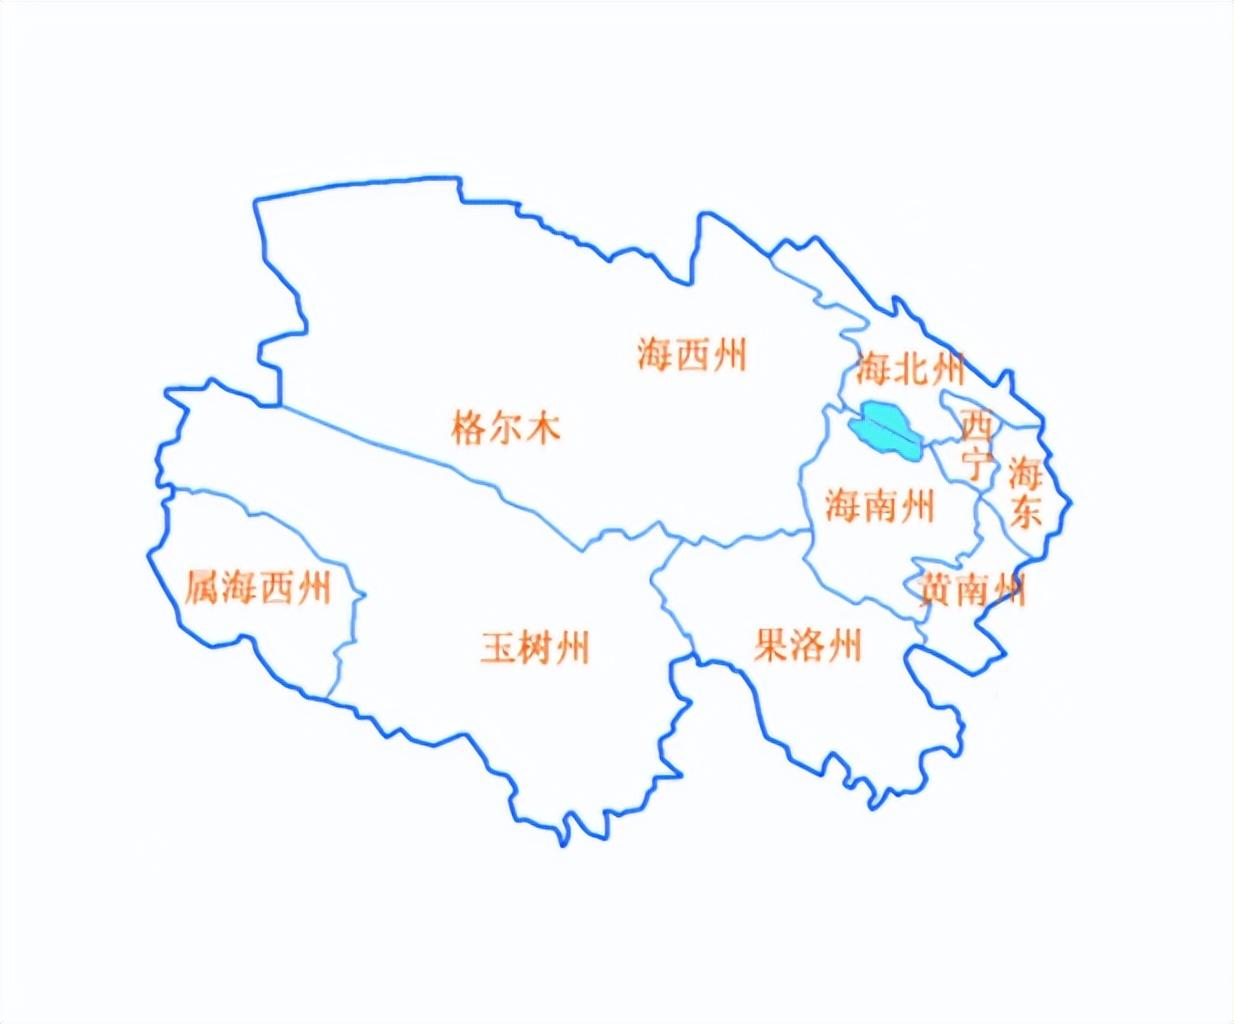 河湟地区地图图片